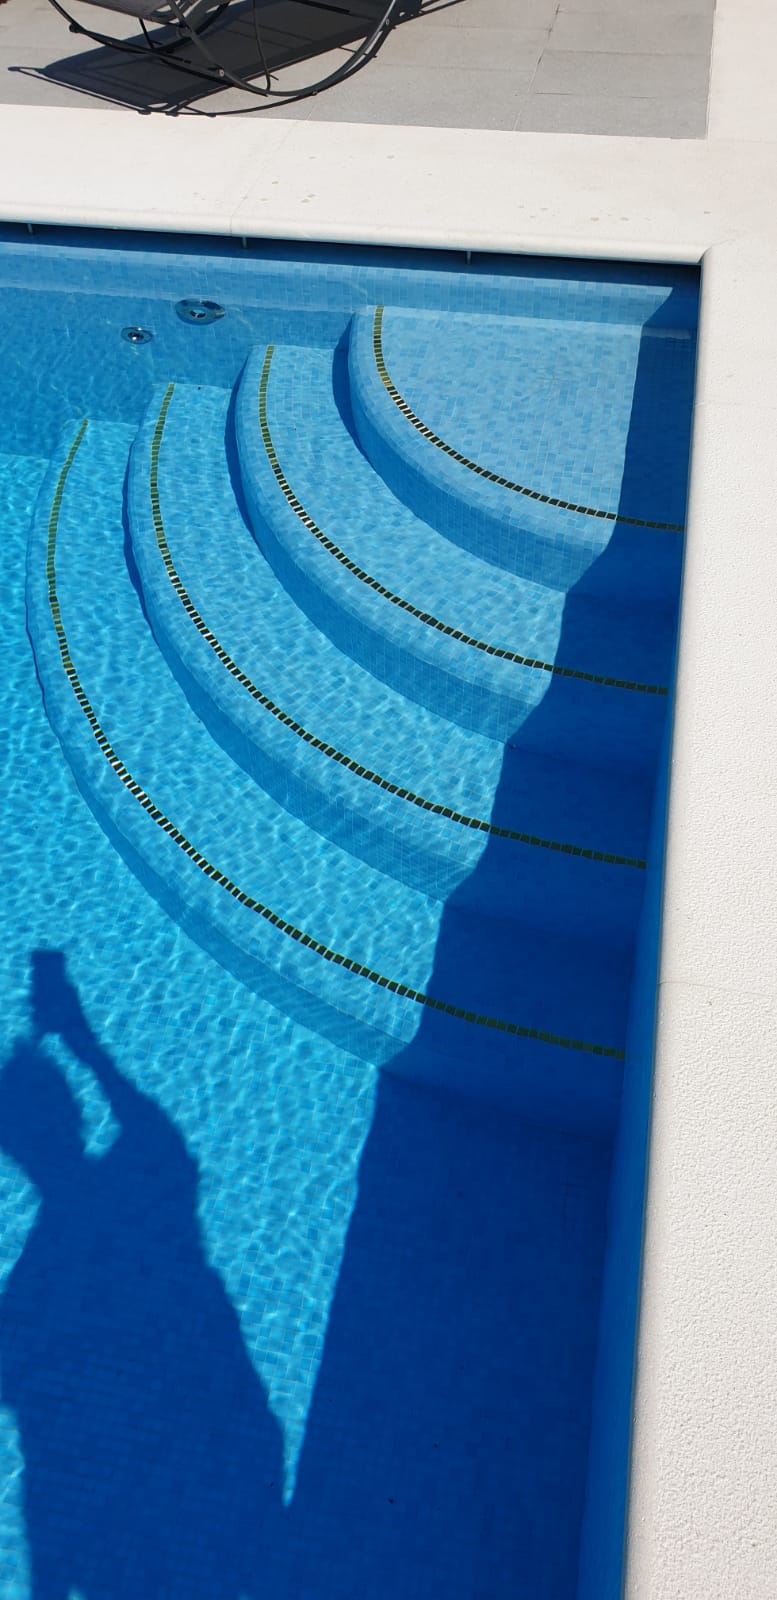 scalini piscina ristrutturazione piscine<br />
